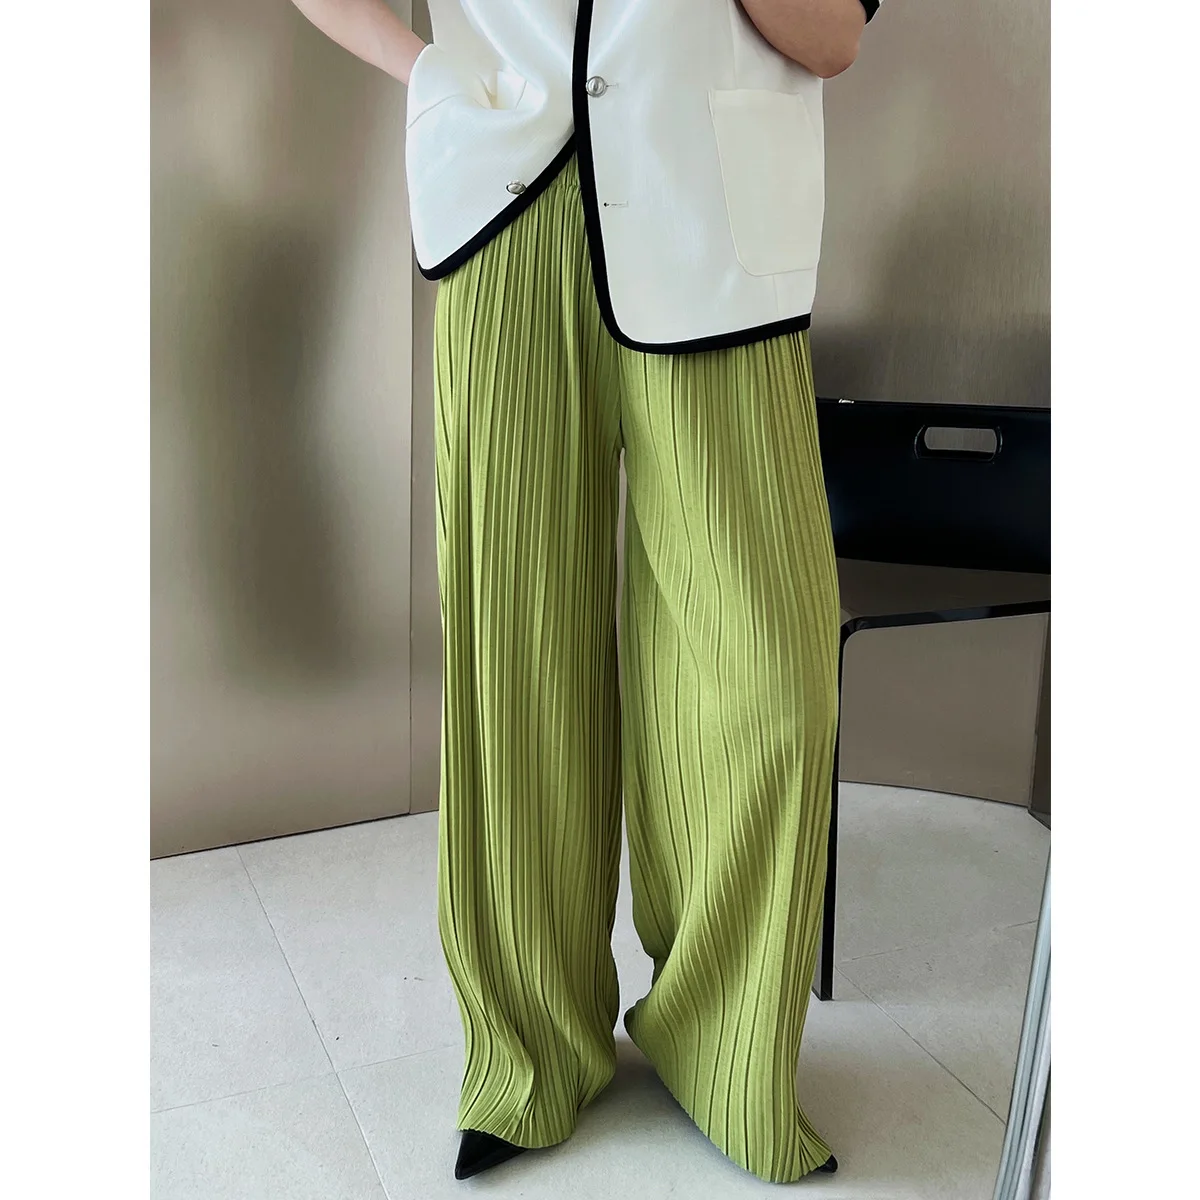 Katı Pilili Geniş Bacak Pantolon Yeşil kadın Rahat Bayanlar Pilili pantolon Gevşek Yüksek Bel Streetwear İnce Pantolon Kadın Yeni 0